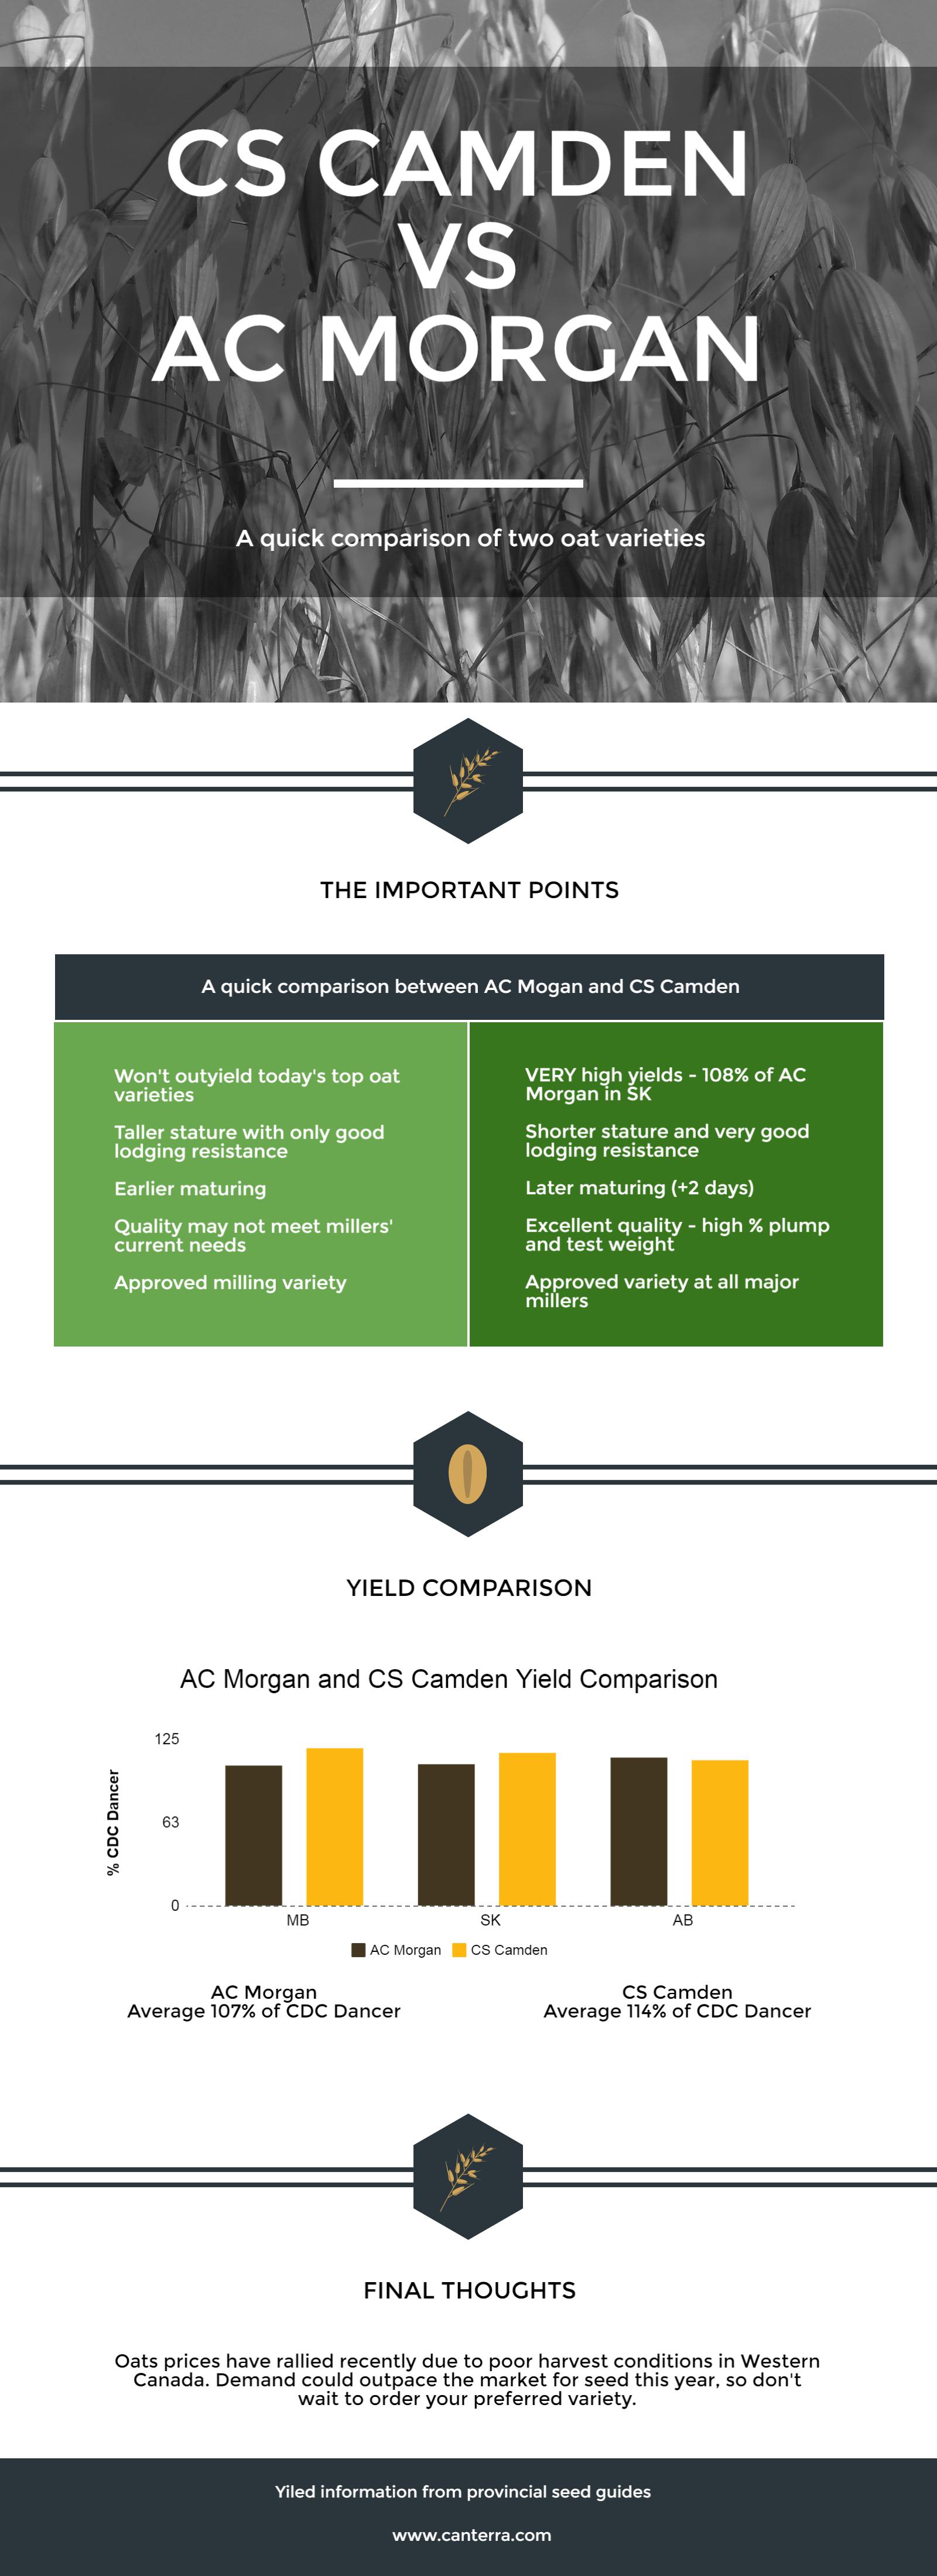 A quick comparison of CS Camden and AC Morgan